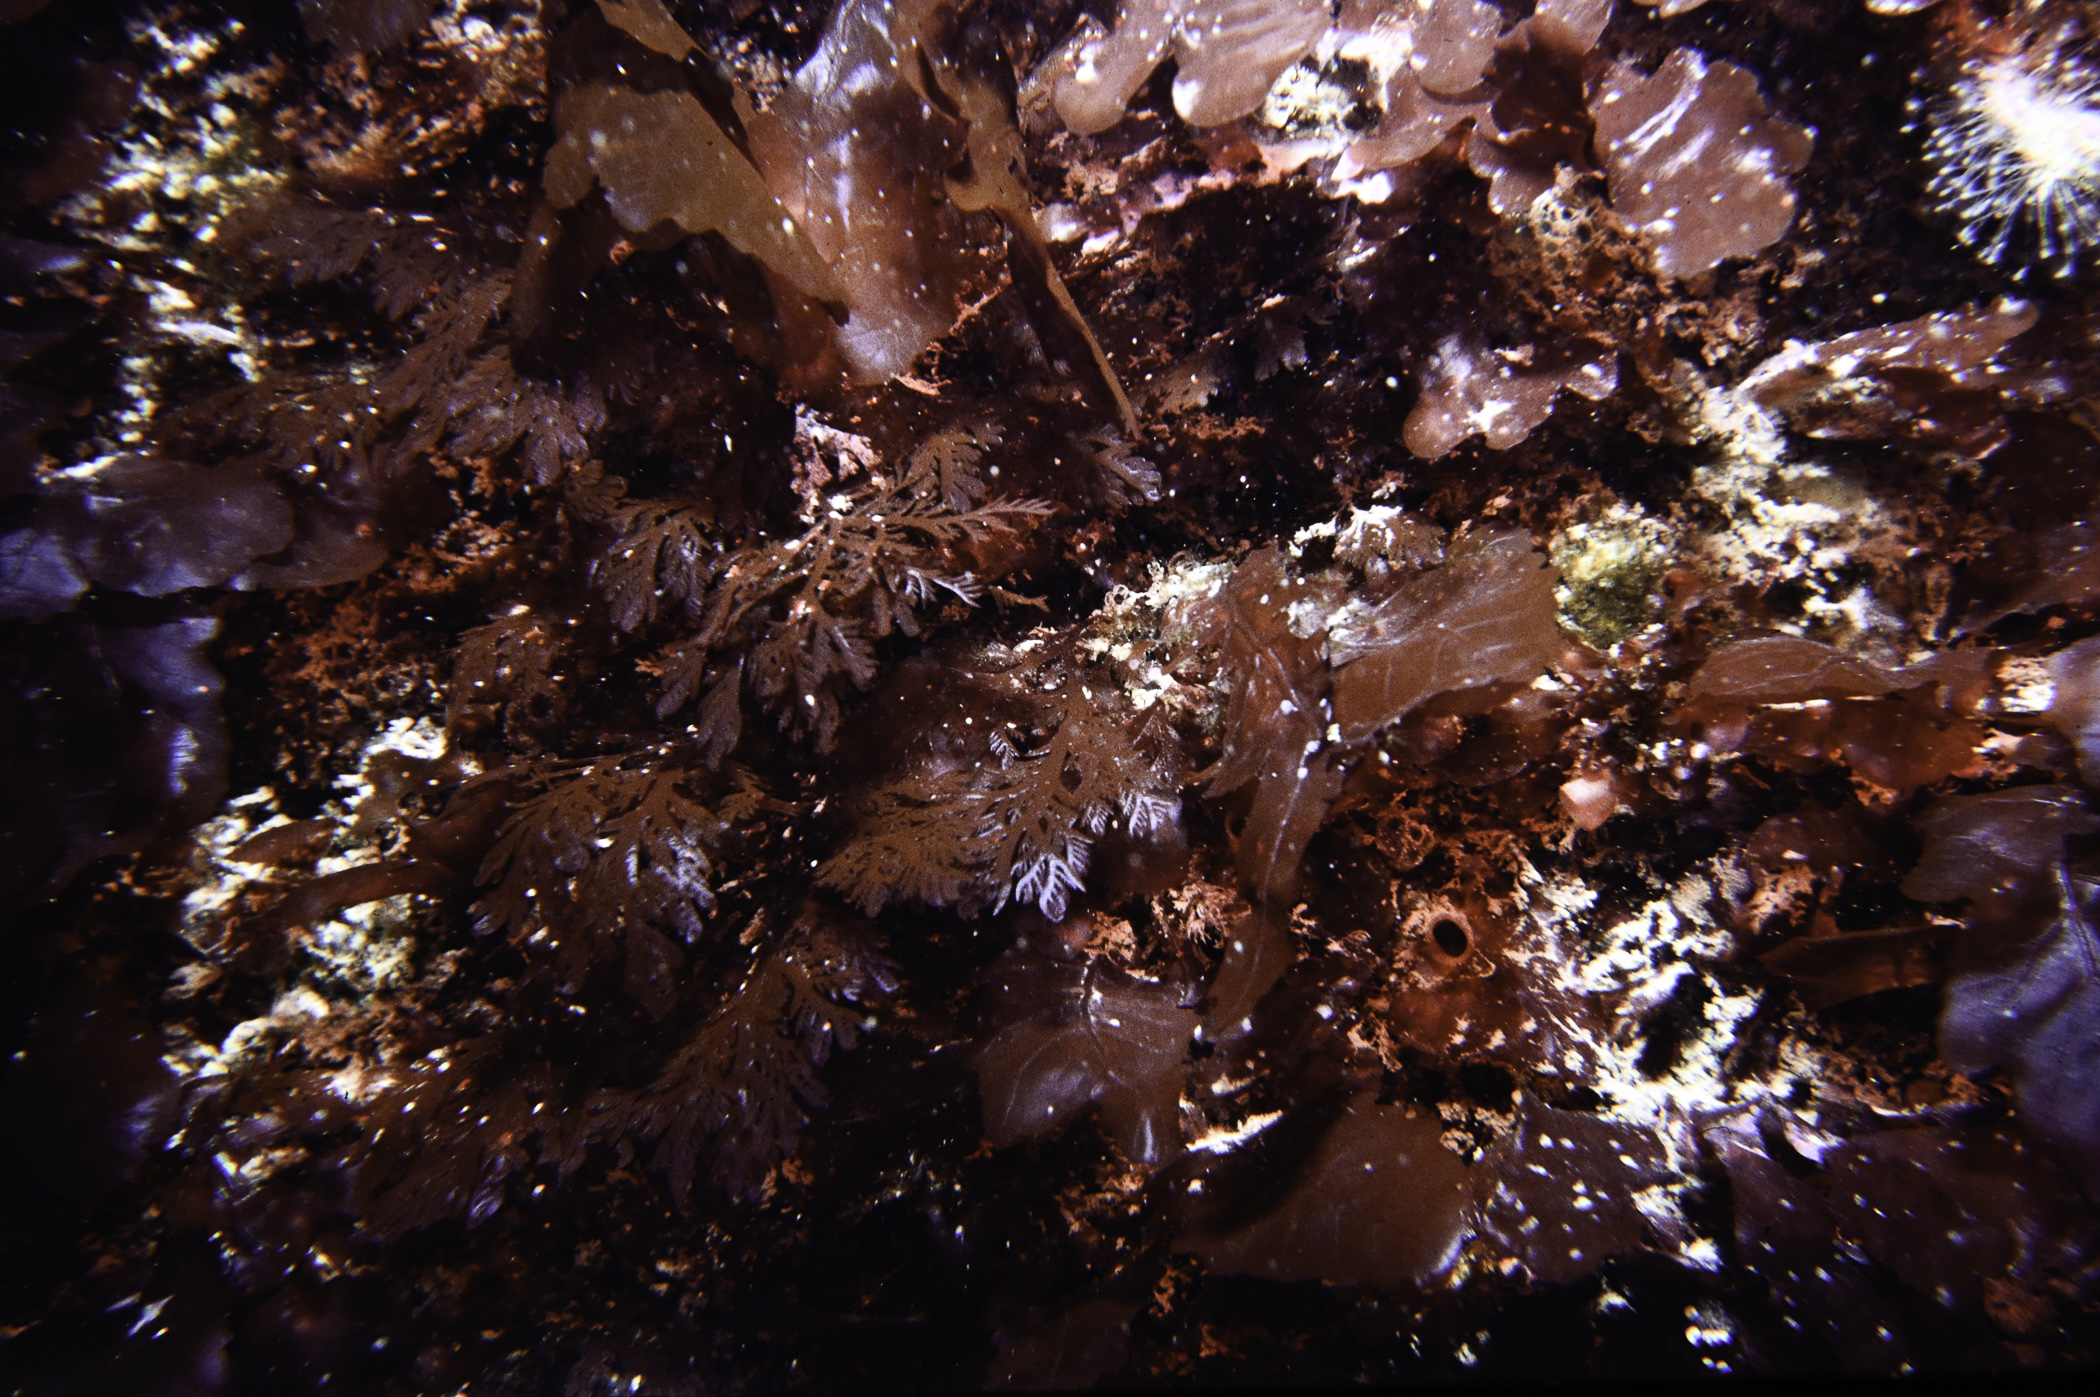 Delesseria sanguinea, Plocamium cartilagineum. Site: NE of Farganlack Point, Rathlin Is. 